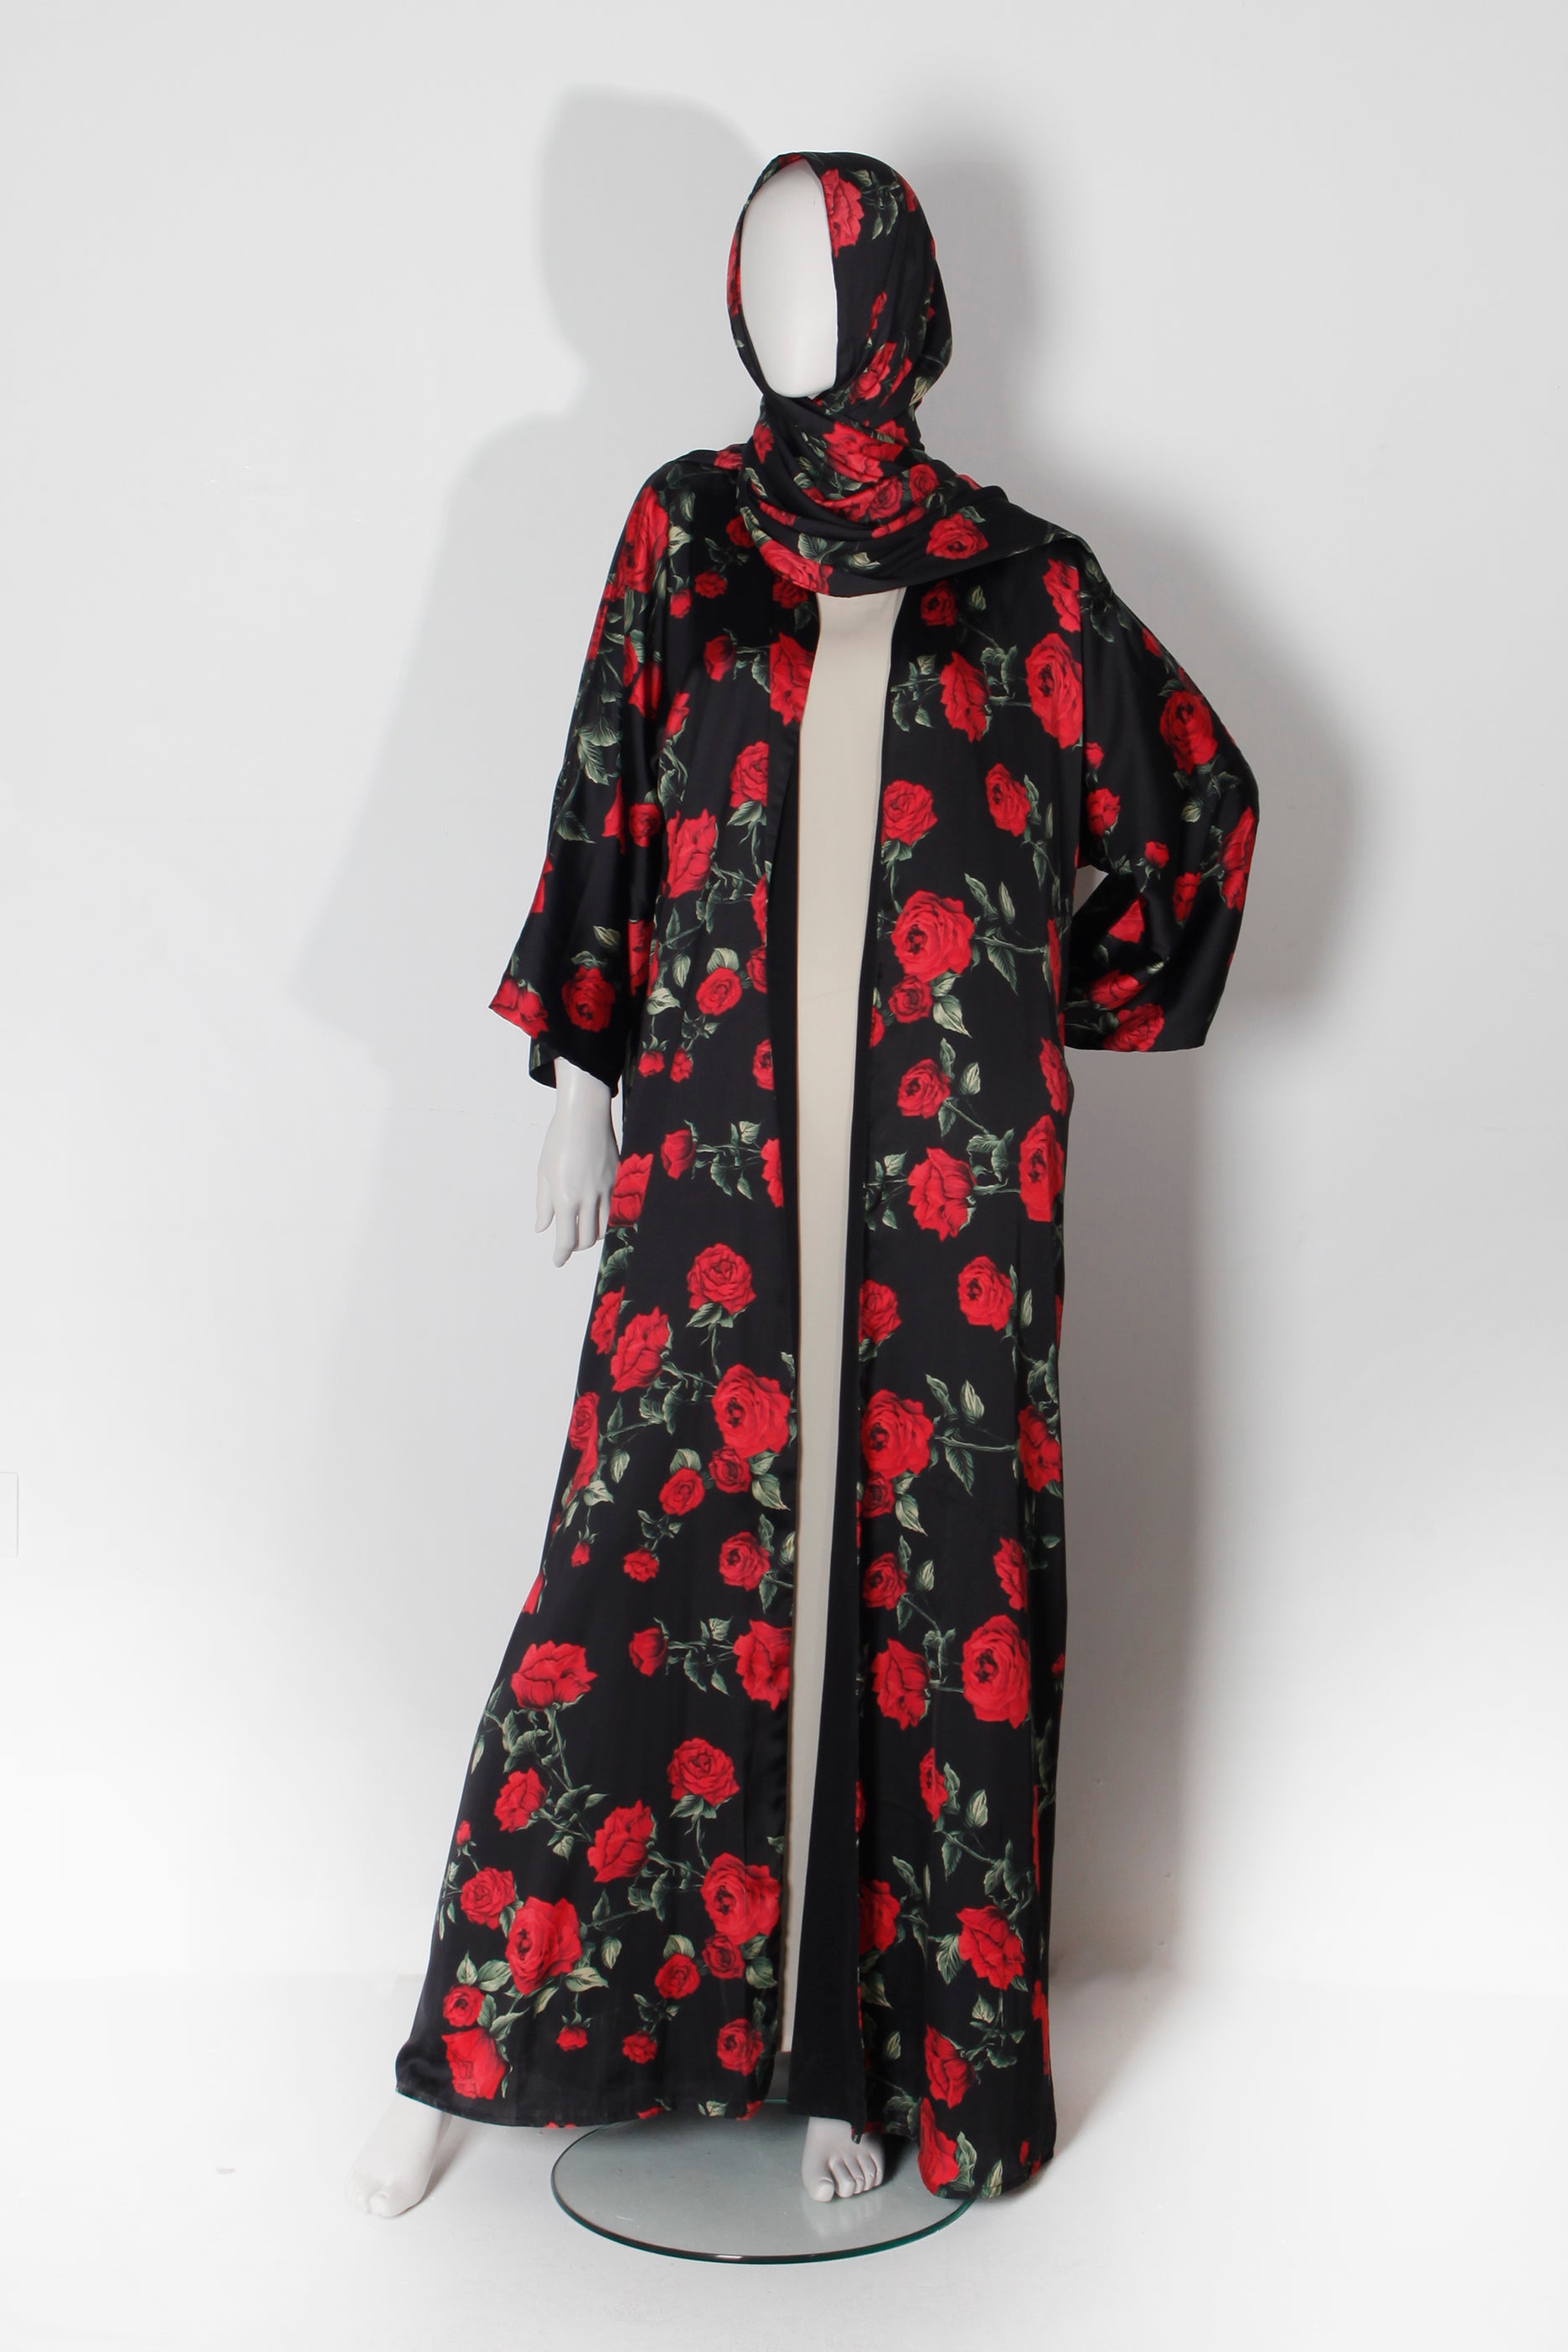 Black and red rose printed abaya